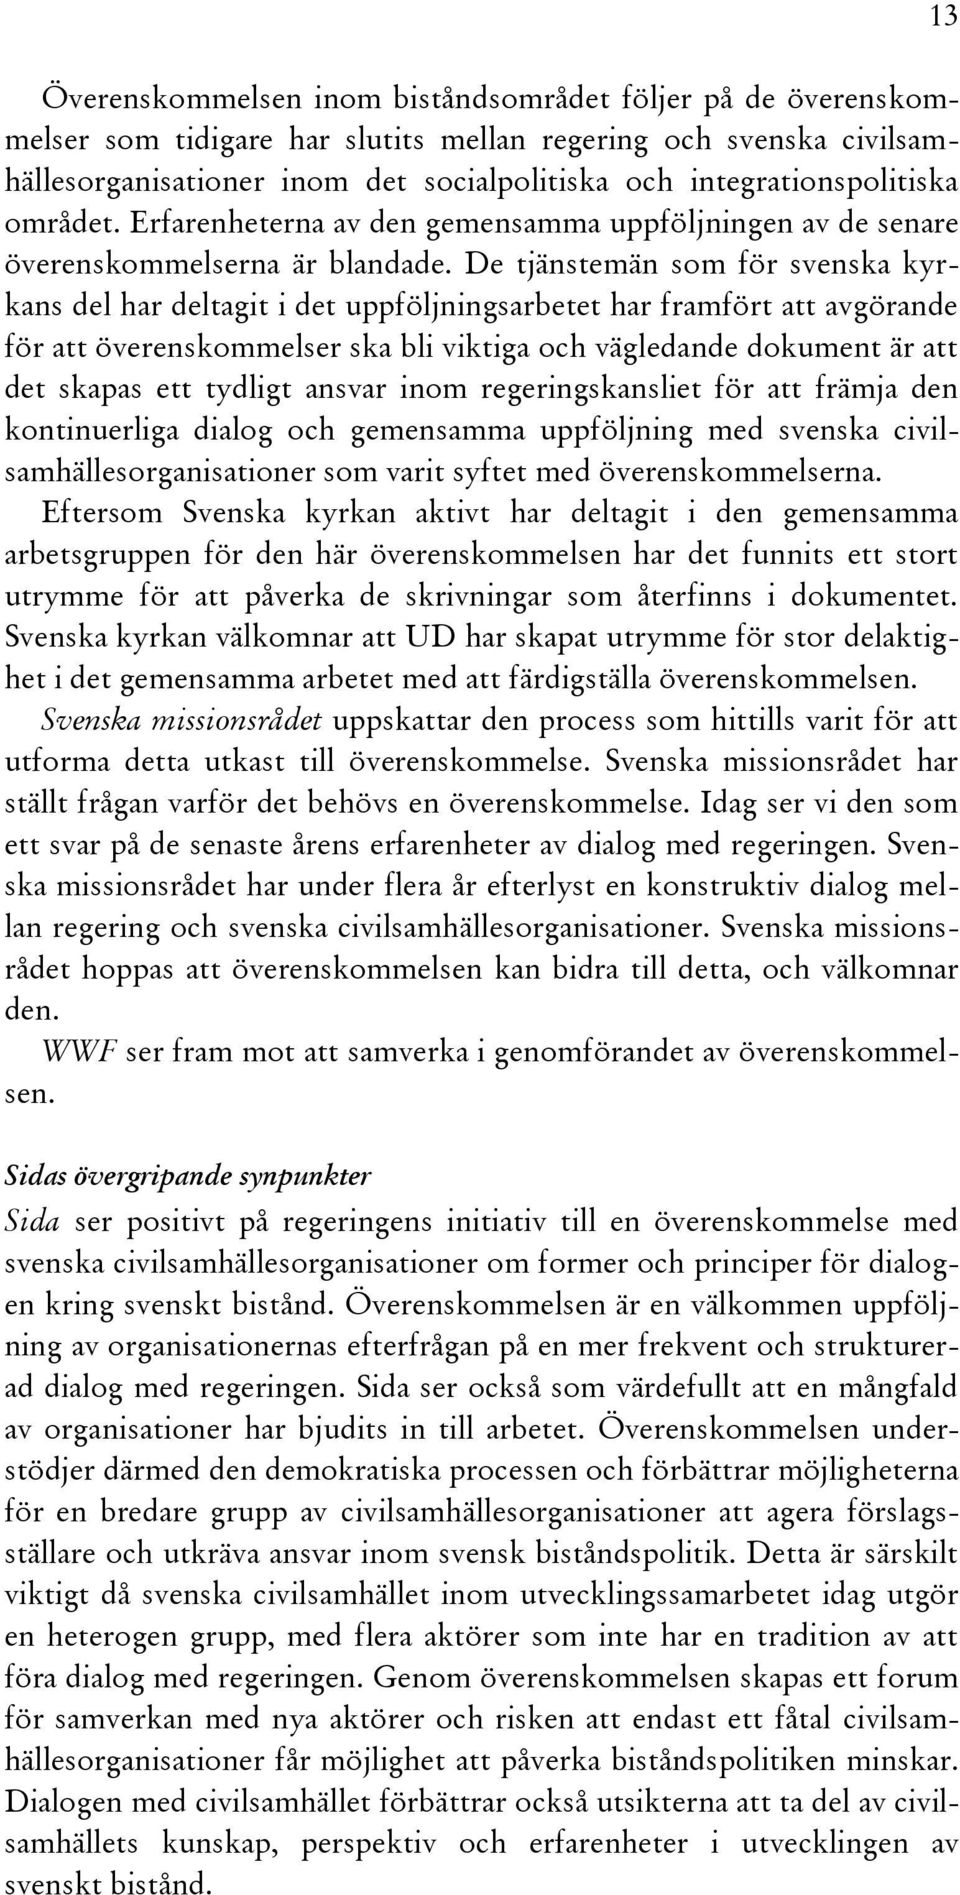 De tjänstemän som för svenska kyrkans del har deltagit i det uppföljningsarbetet har framfört att avgörande för att överenskommelser ska bli viktiga och vägledande dokument är att det skapas ett